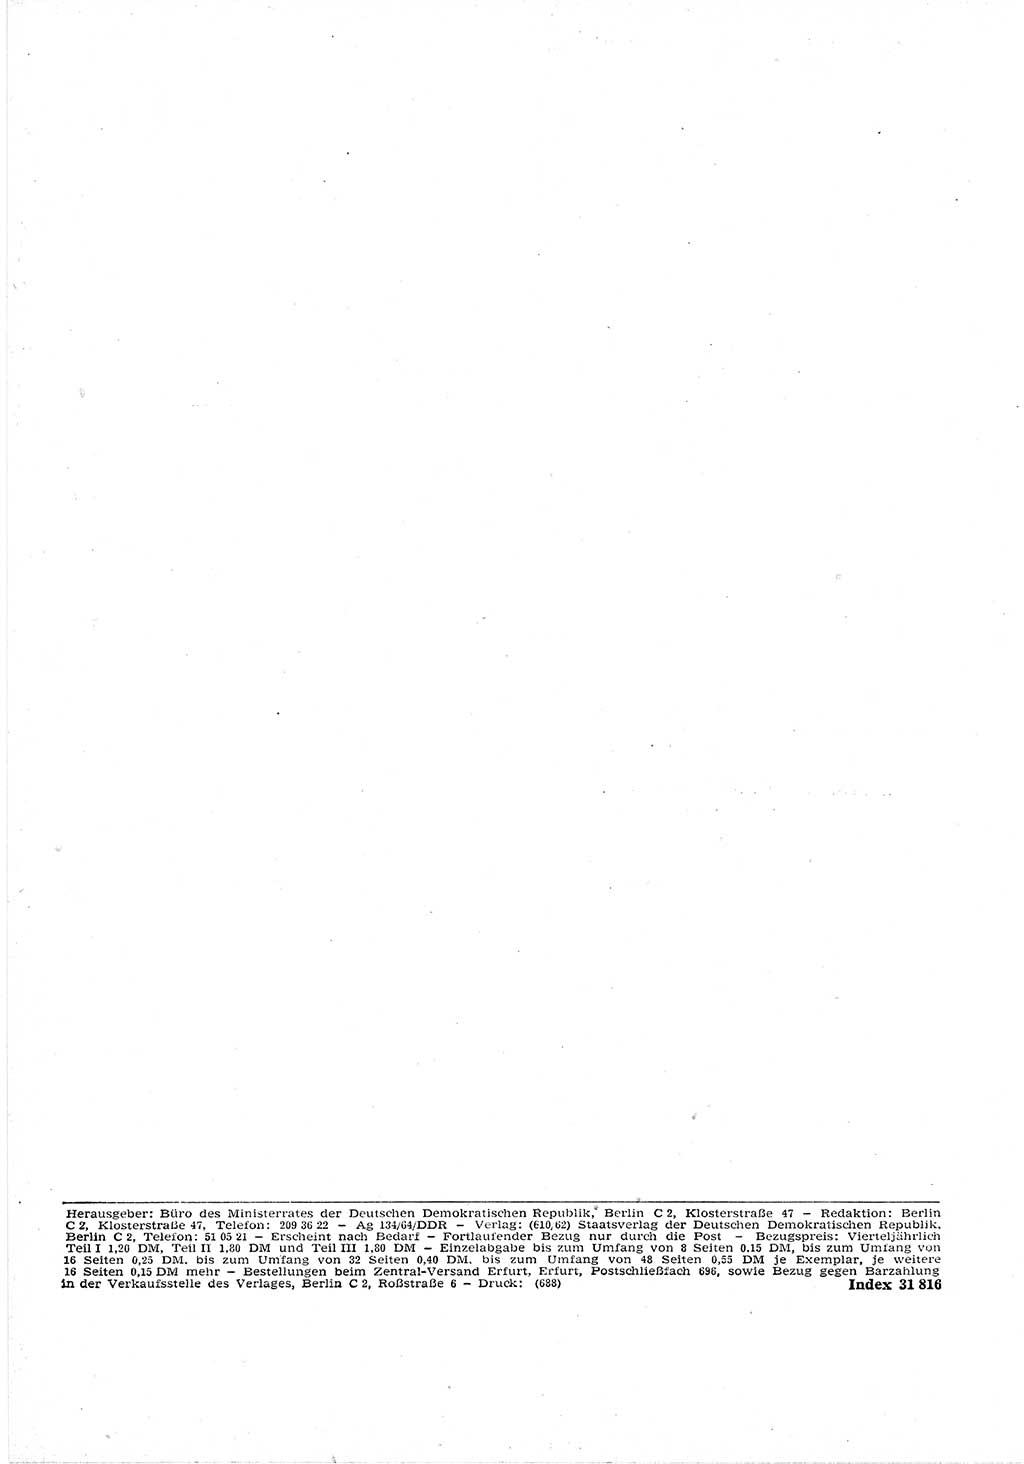 Gesetzblatt (GBl.) der Deutschen Demokratischen Republik (DDR) Teil Ⅰ 1964, Seite 98 (GBl. DDR Ⅰ 1964, S. 98)